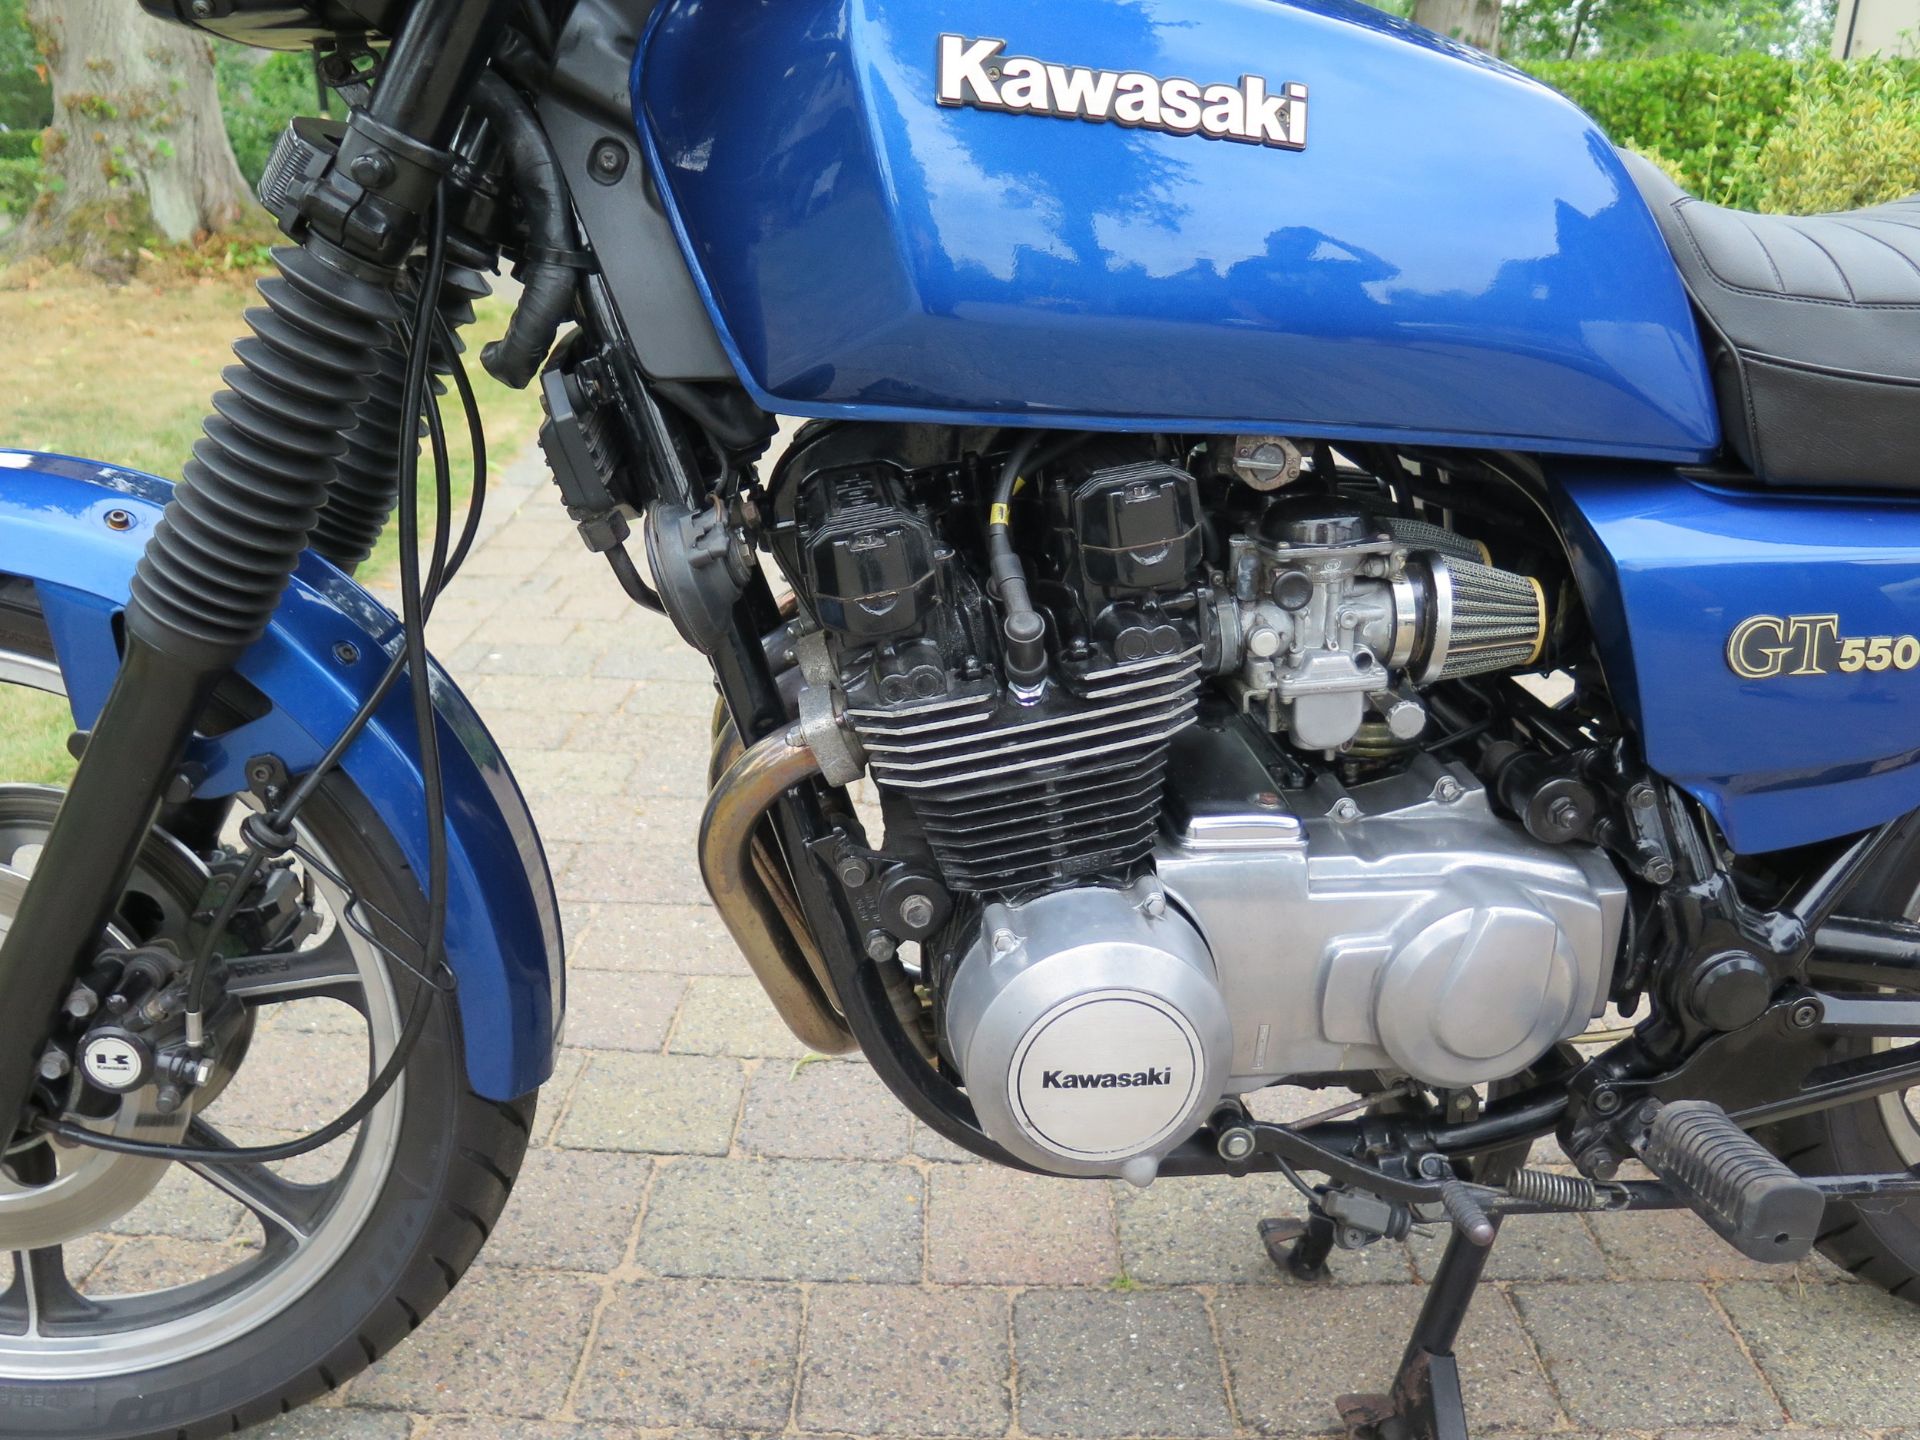 1986 Kawasaki GT 550 (Z550 G3) Registration number D871 TVO Frame number KZ550G-003912 Engine number - Image 3 of 12